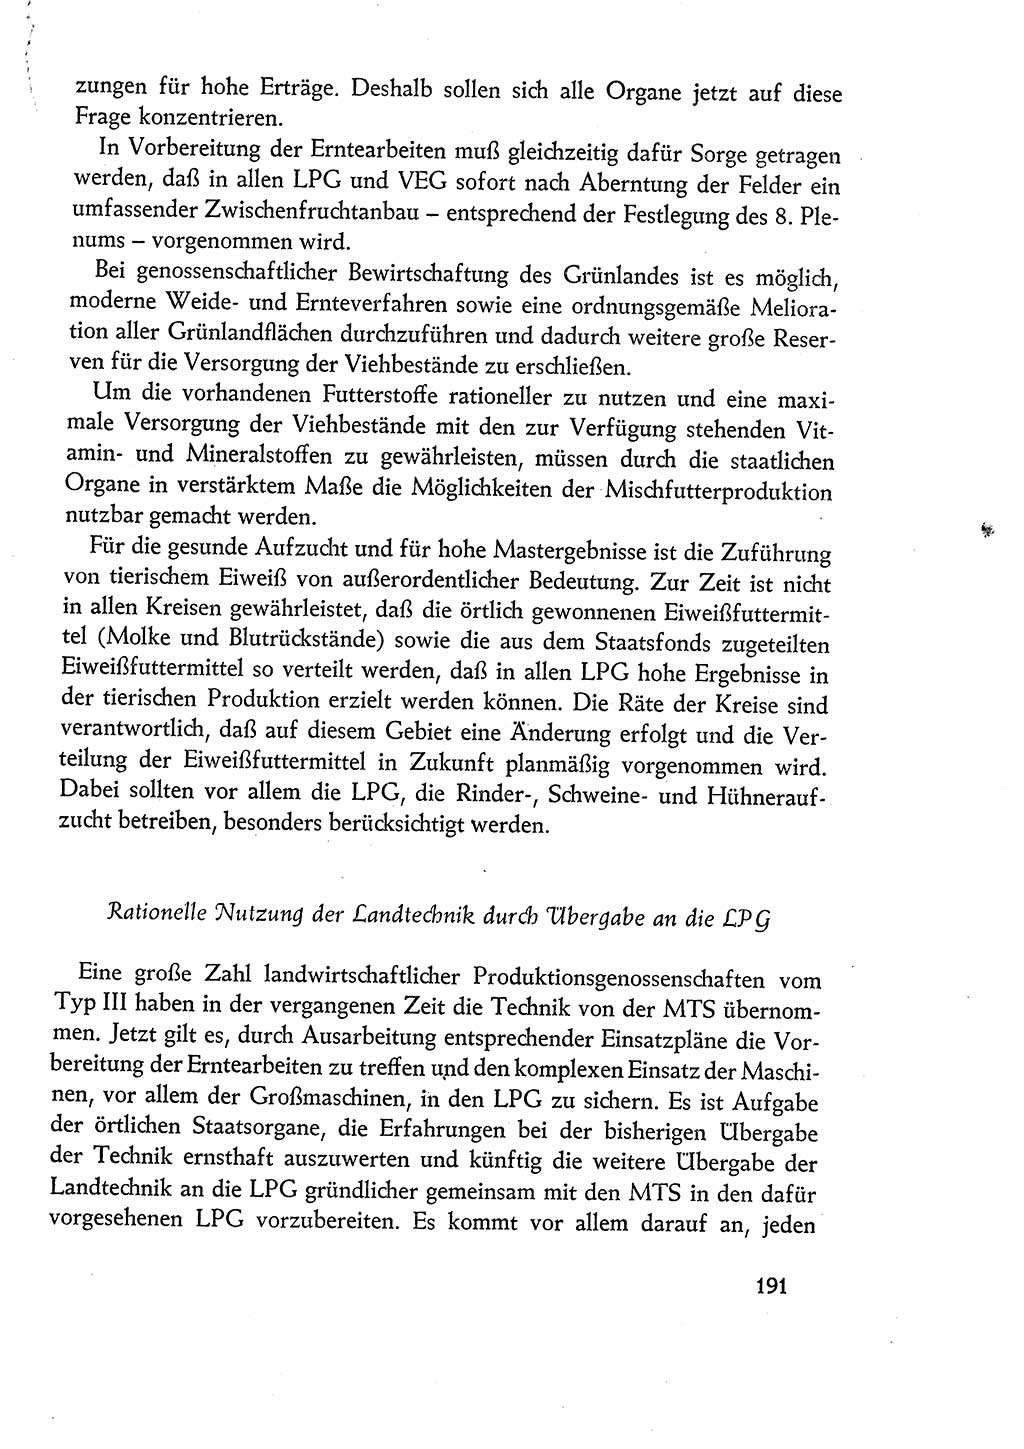 Dokumente der Sozialistischen Einheitspartei Deutschlands (SED) [Deutsche Demokratische Republik (DDR)] 1960-1961, Seite 191 (Dok. SED DDR 1960-1961, S. 191)